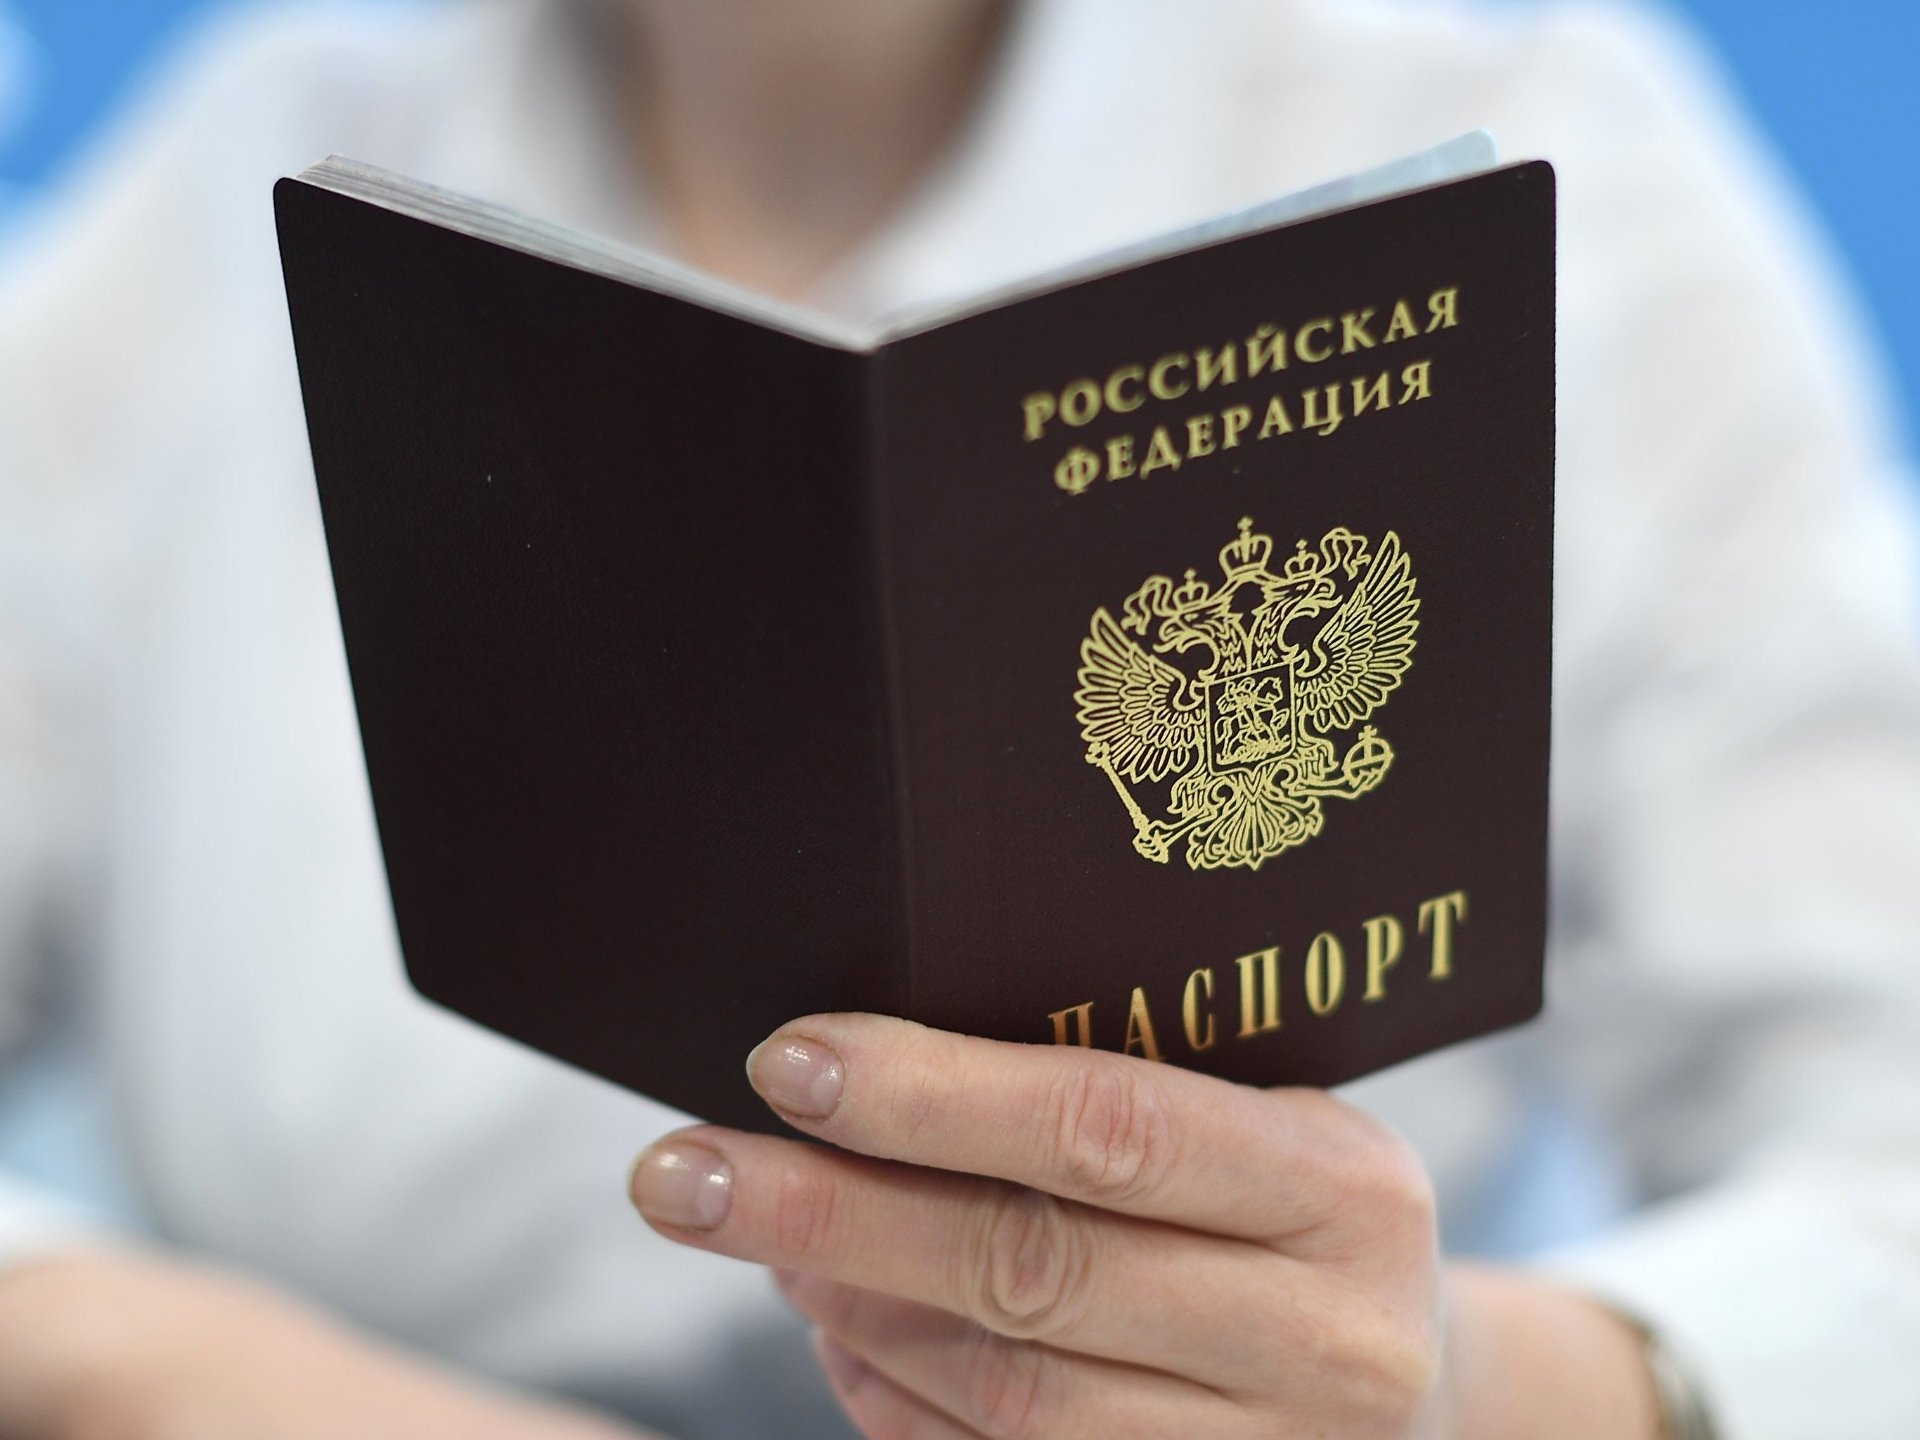 Взять кредит и поменять имя в паспорте кредит онлайн на банковскую карту украина без звонка